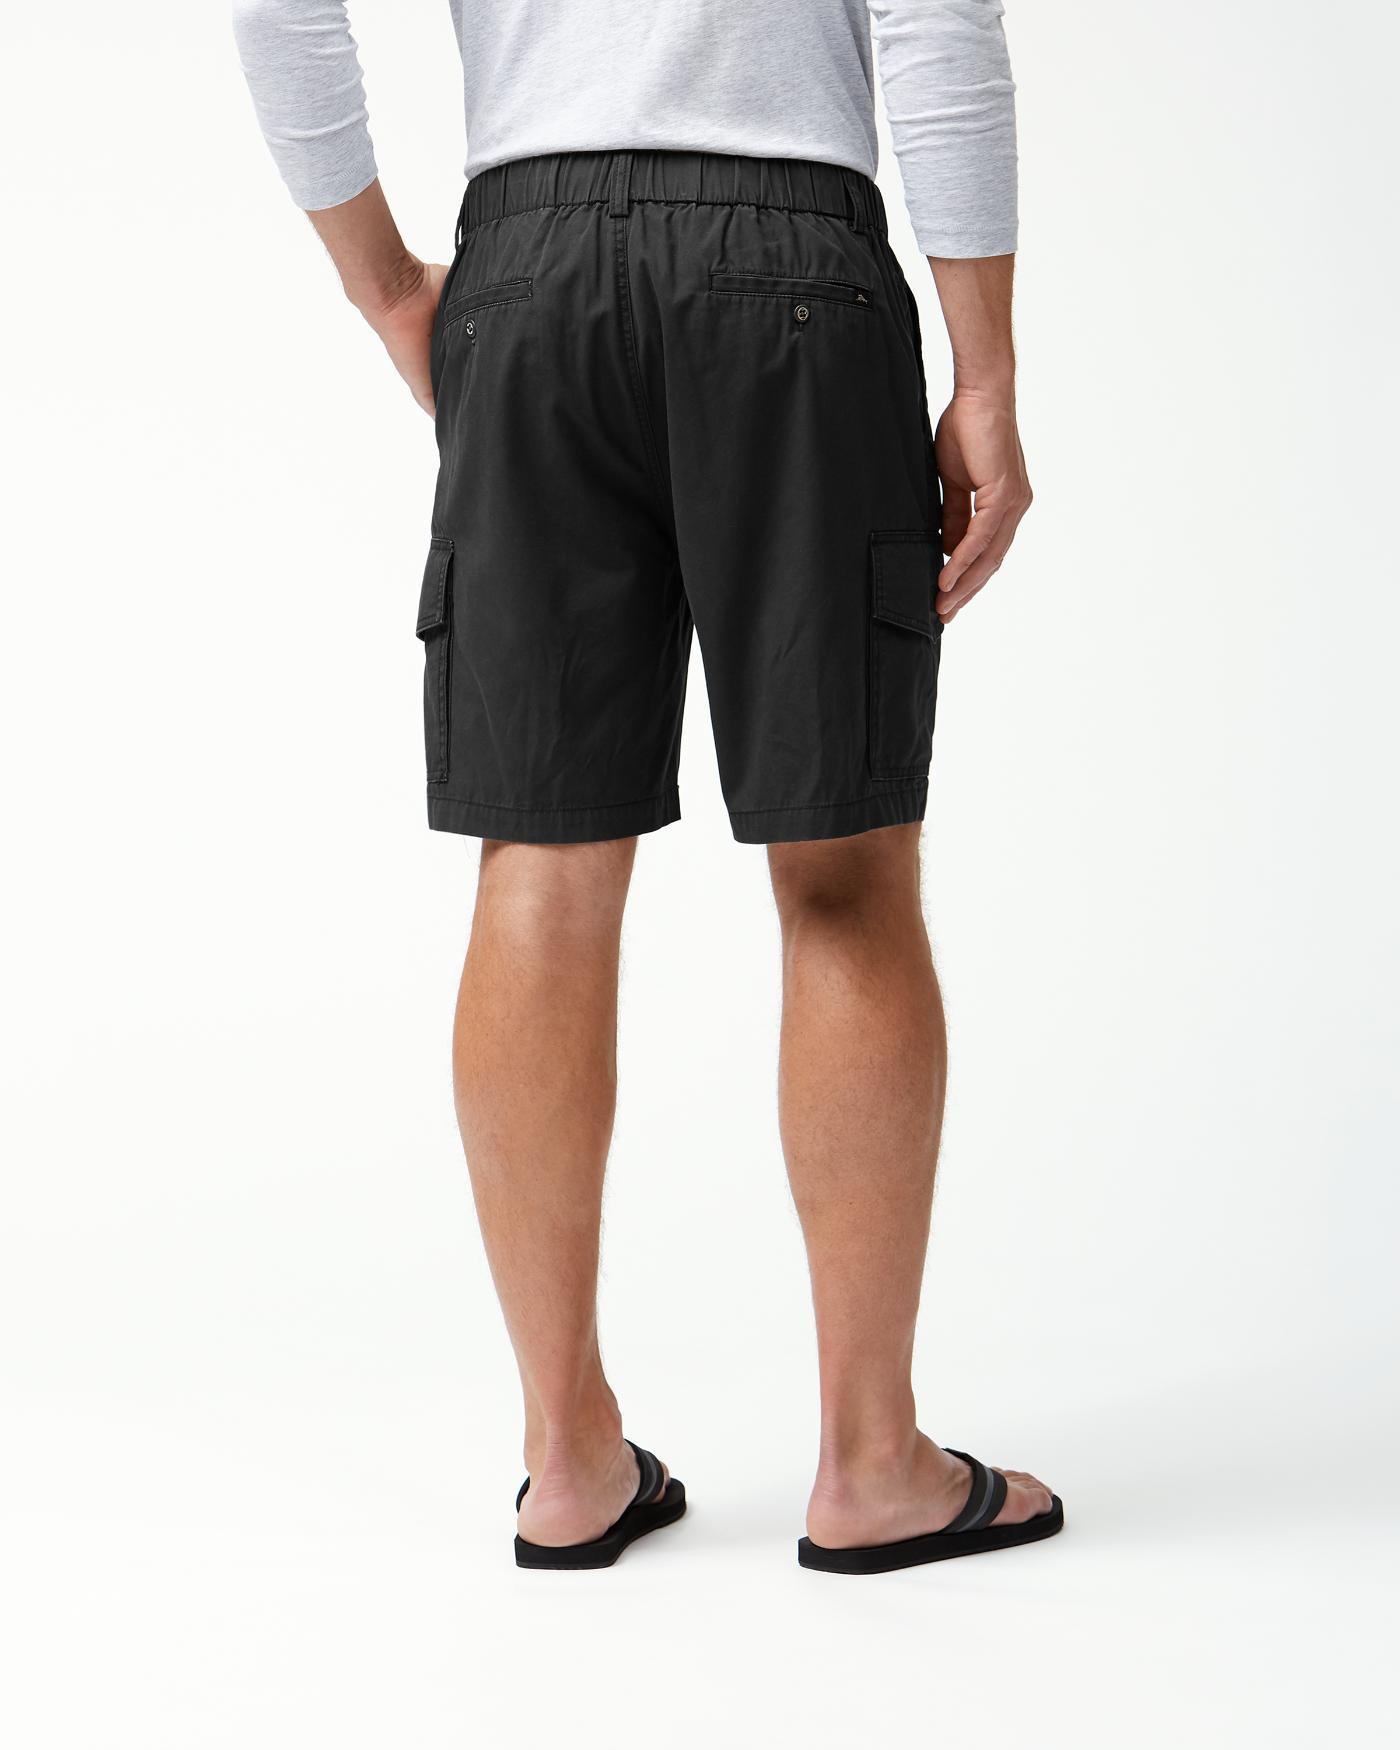 tommy bahama survivor shorts